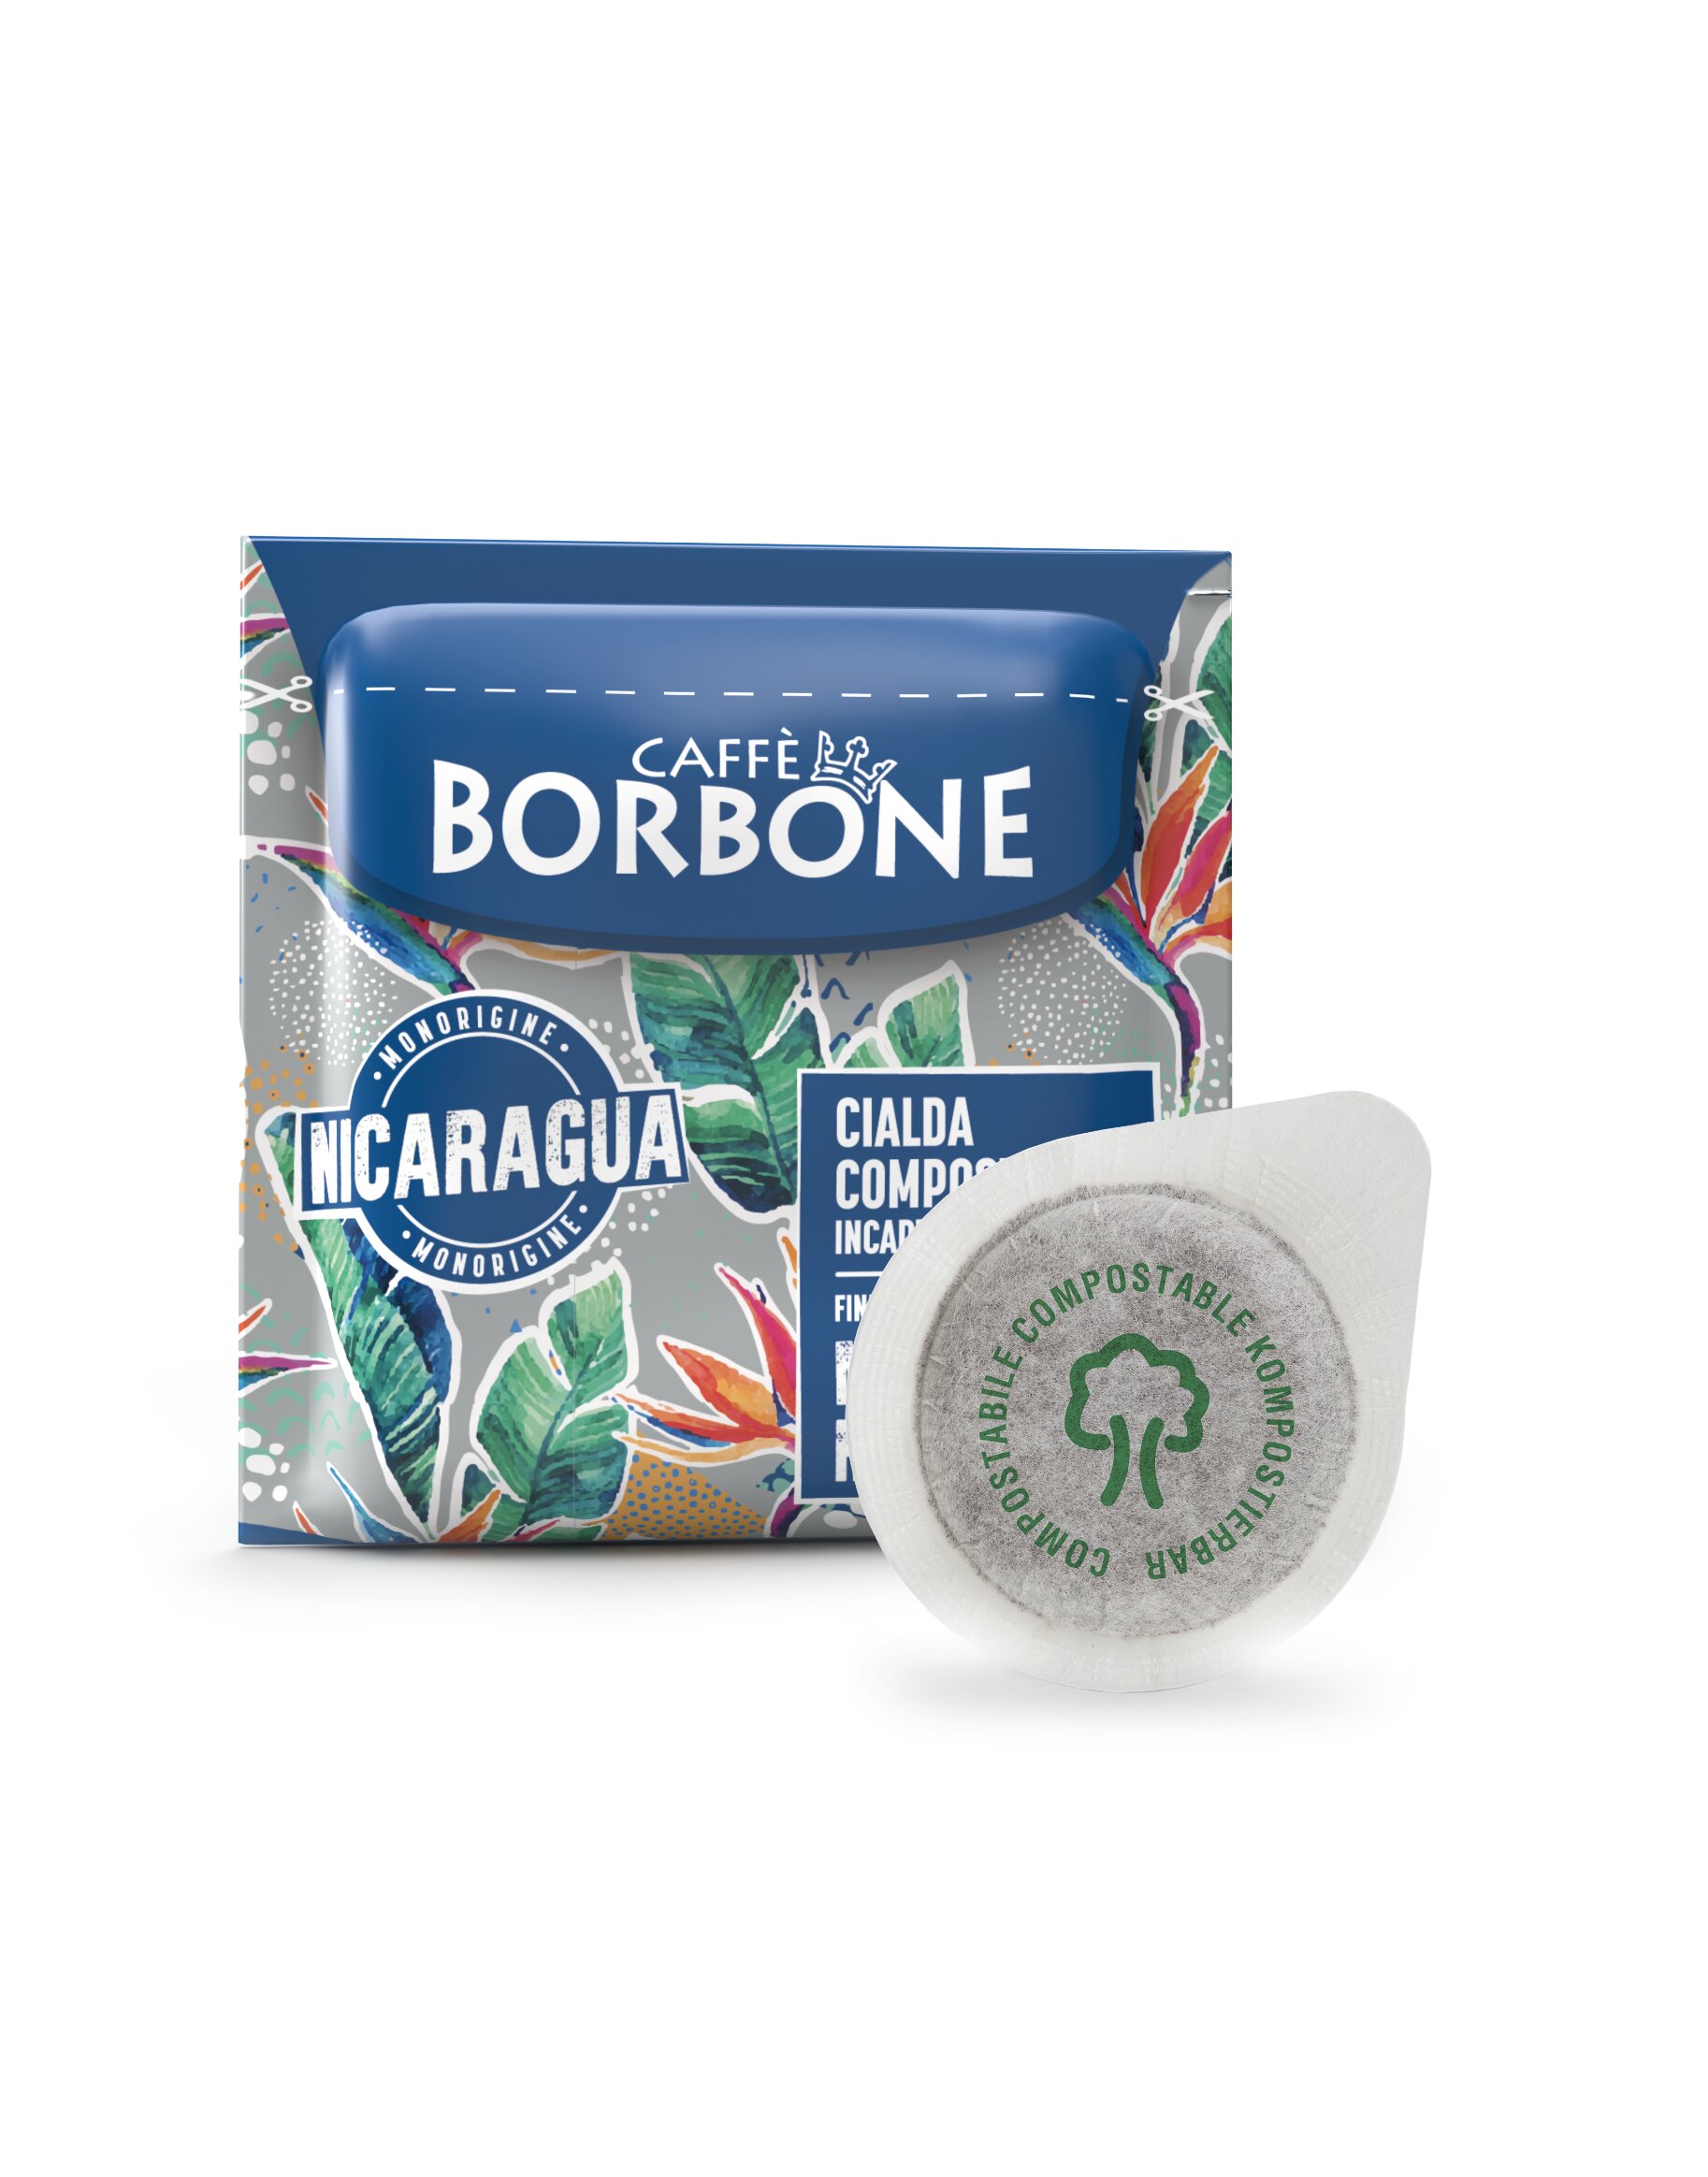 Caffè Borbone NICARAGUA ESE Espressopads ab 12,50 EUR bei Crifalu Kaffee günstig online kaufen